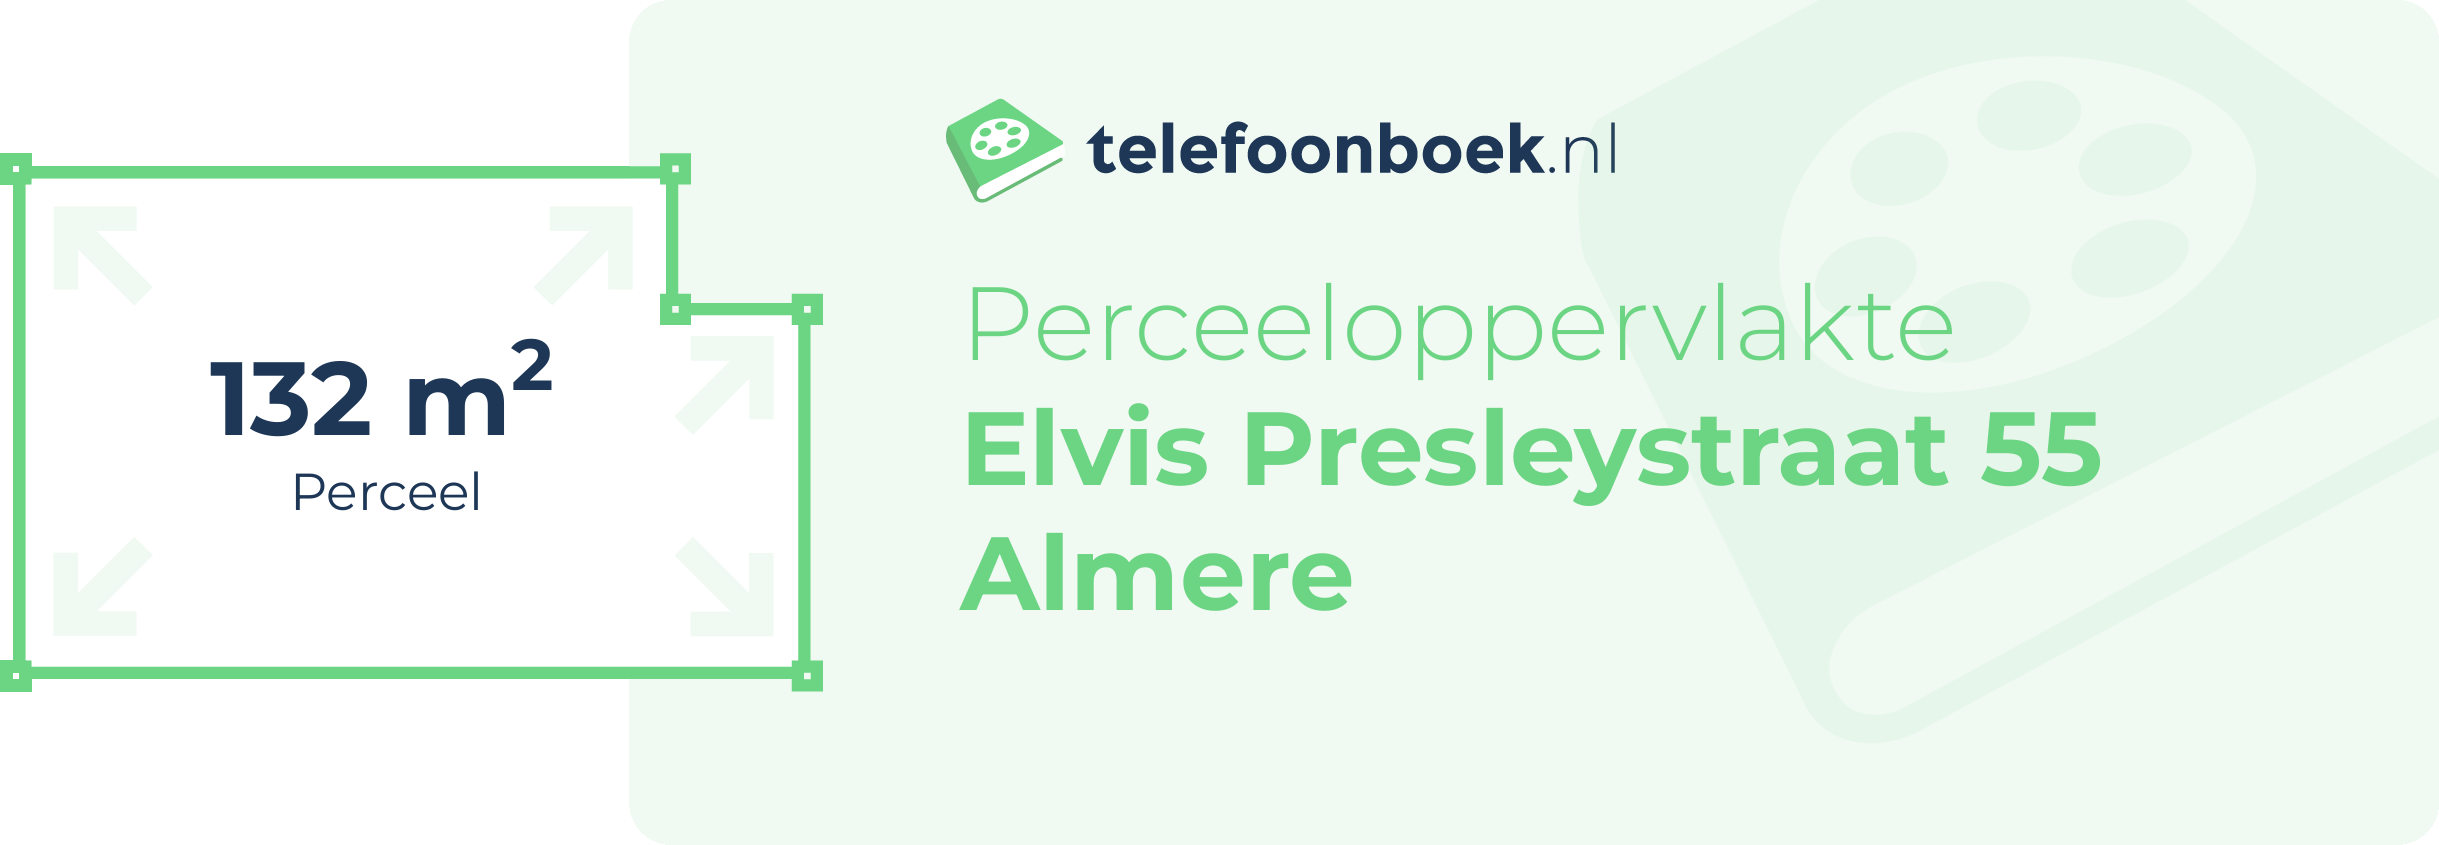 Perceeloppervlakte Elvis Presleystraat 55 Almere